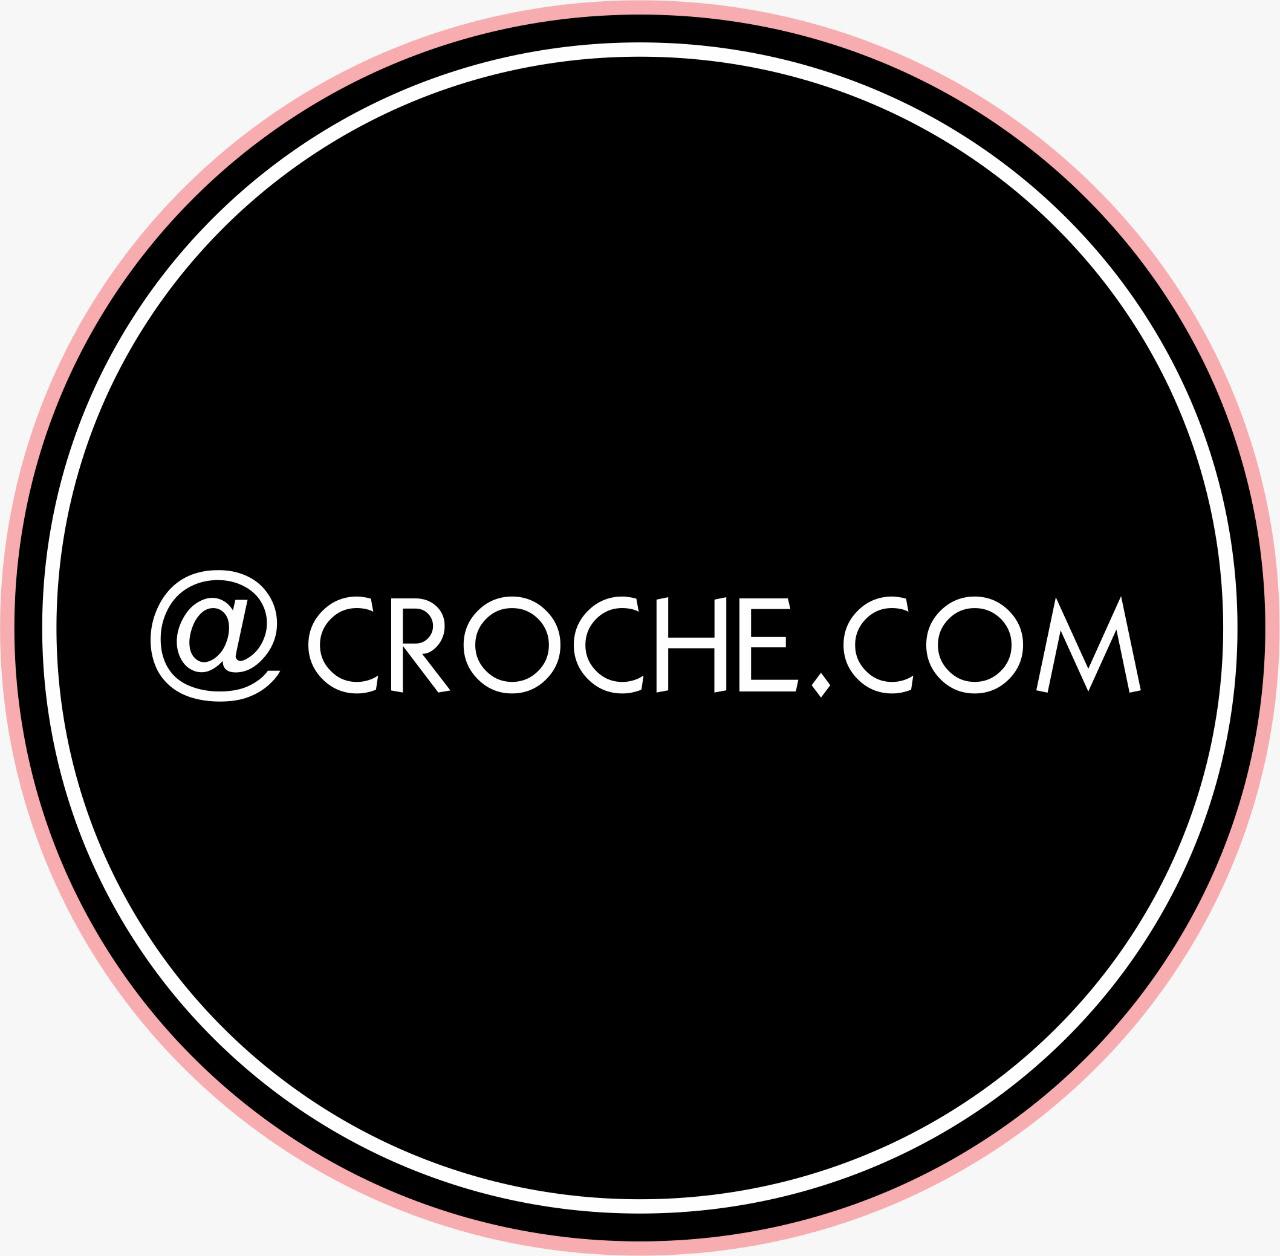 Croche.com Oficial